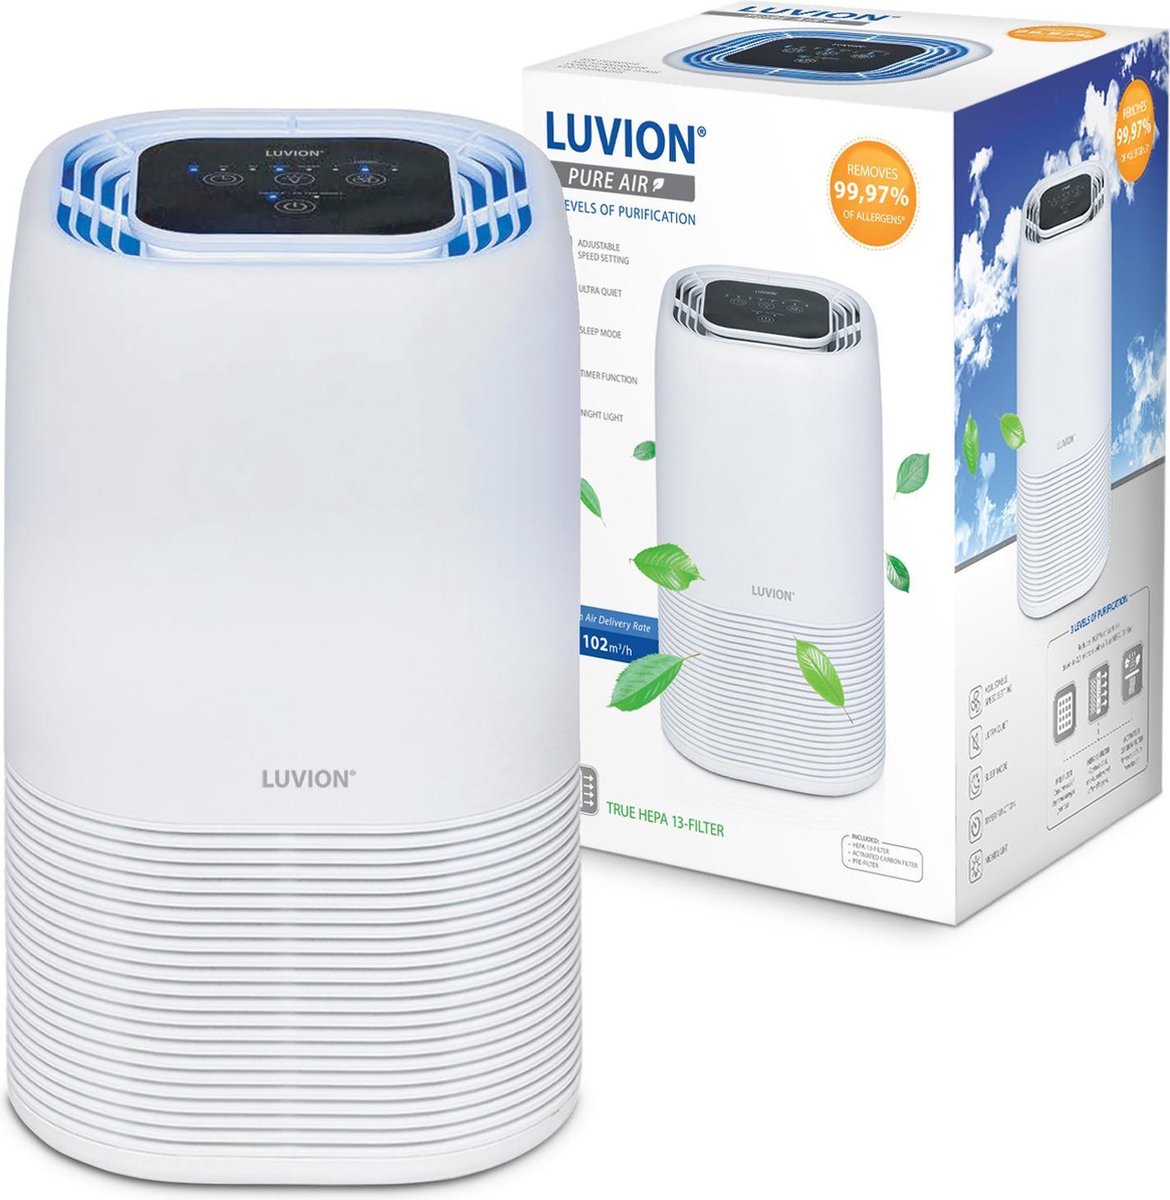 LUVION® Pure Air - HEPA Pro luchtreiniger – speciaal voor de slaap-, baby- en kinderkamer